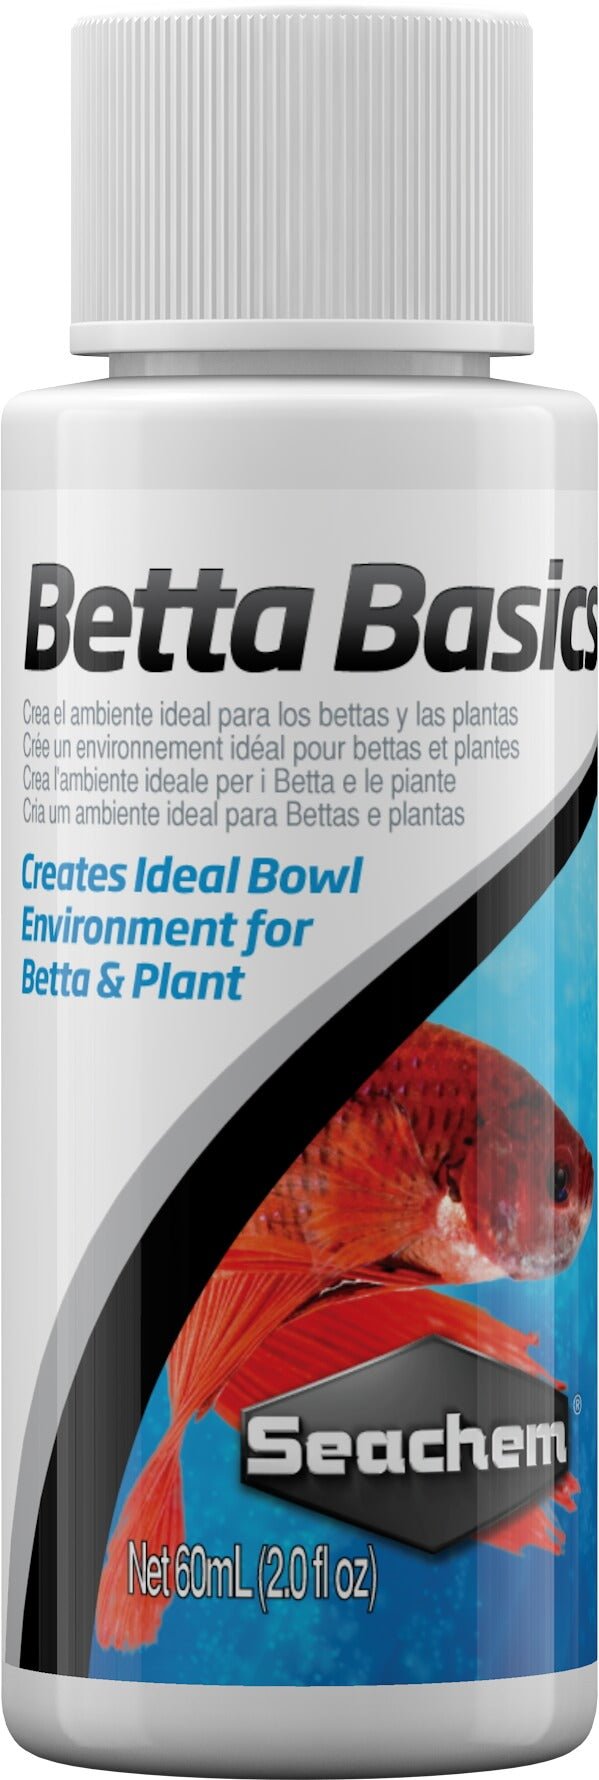 Betta Basics 60ml, by Seachem - Keepin' it Reef